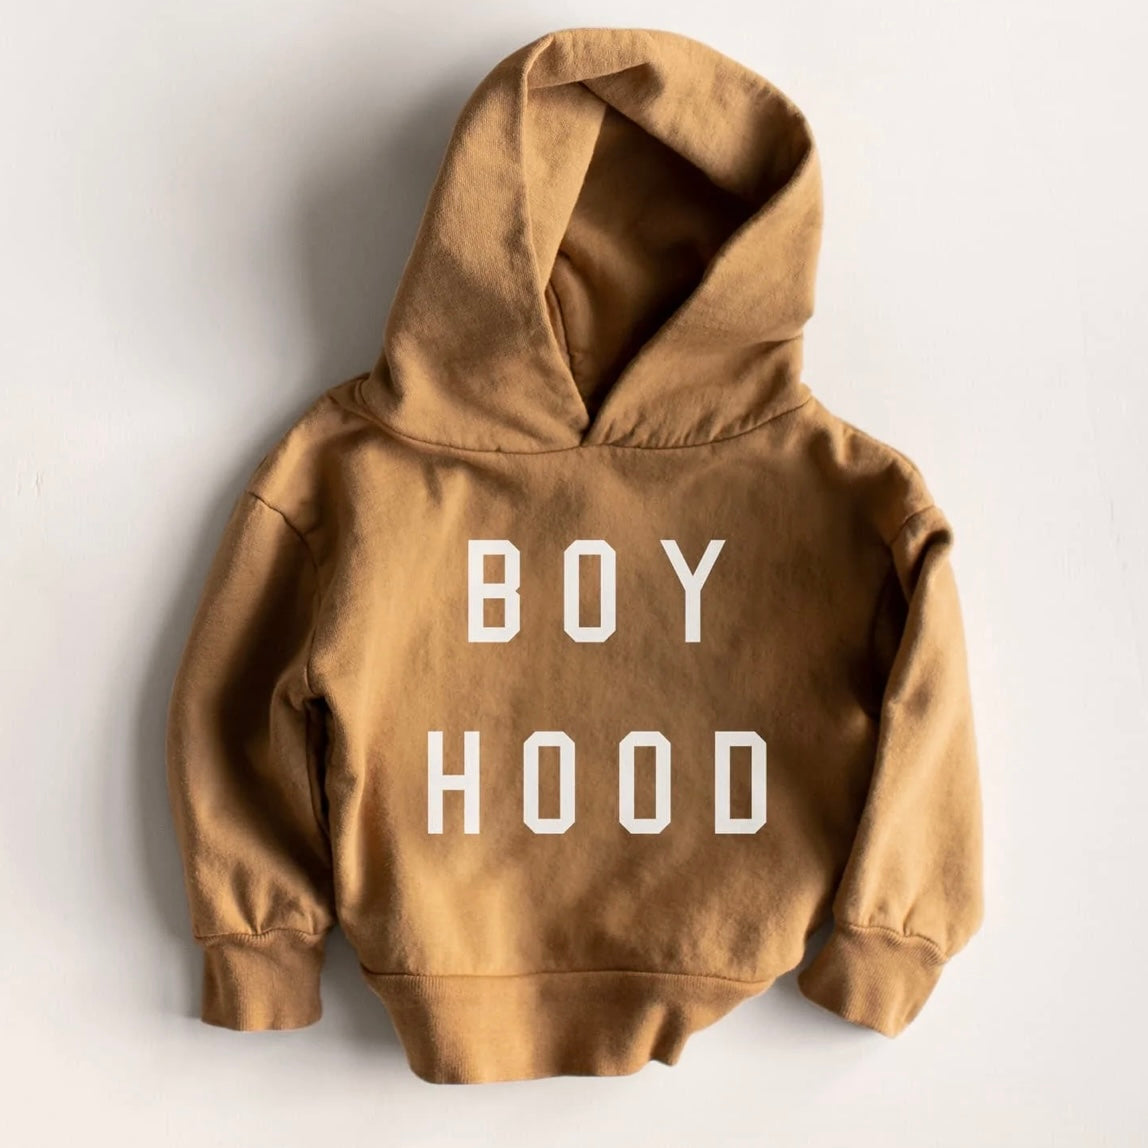 "Boyhood" Hoody